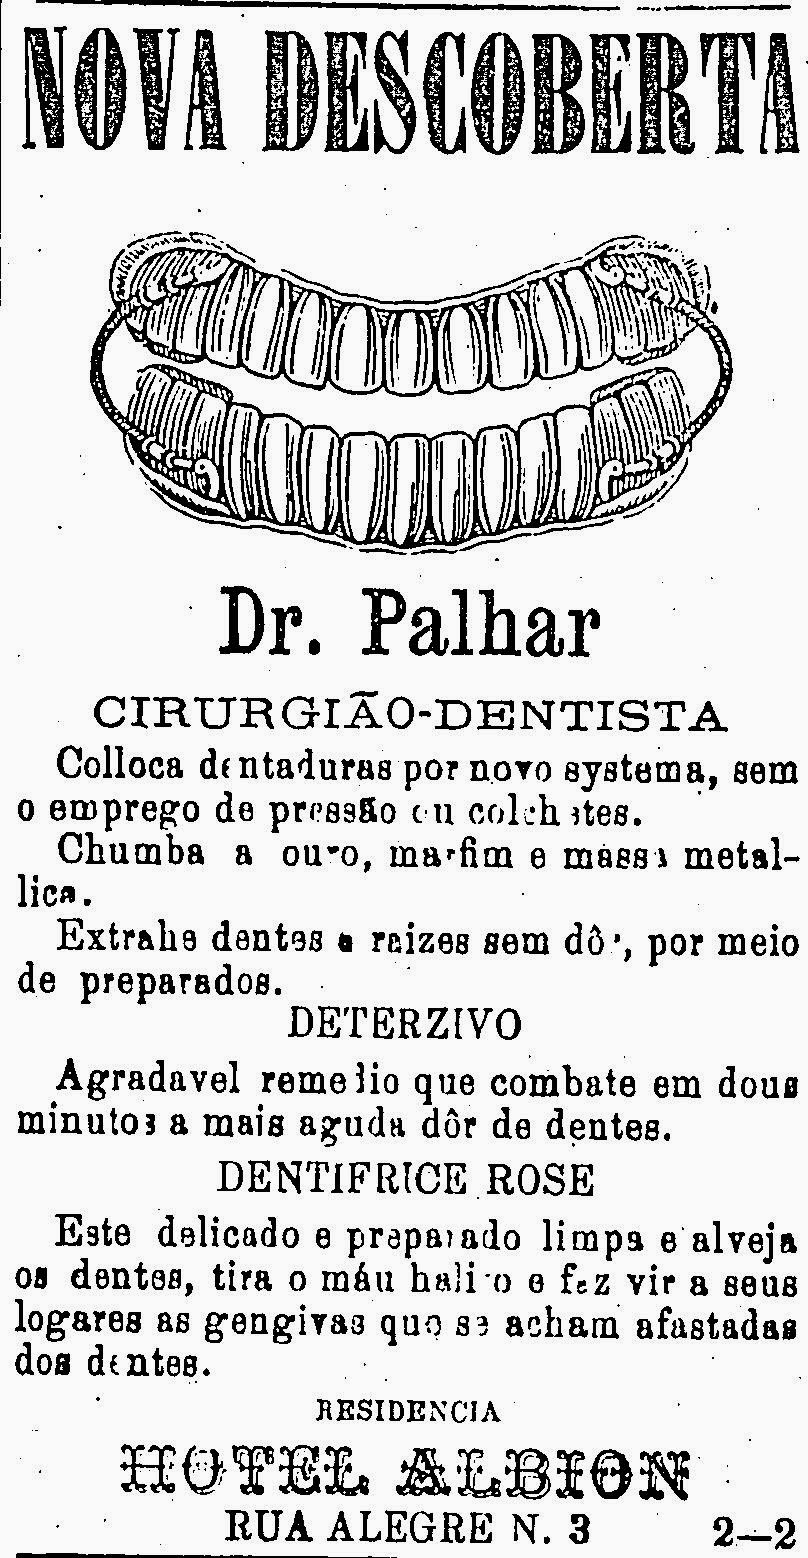 Propaganda do dentista Dr. Palhar, veiculado no jornal 'O Estado de São Paulo' em 1878.